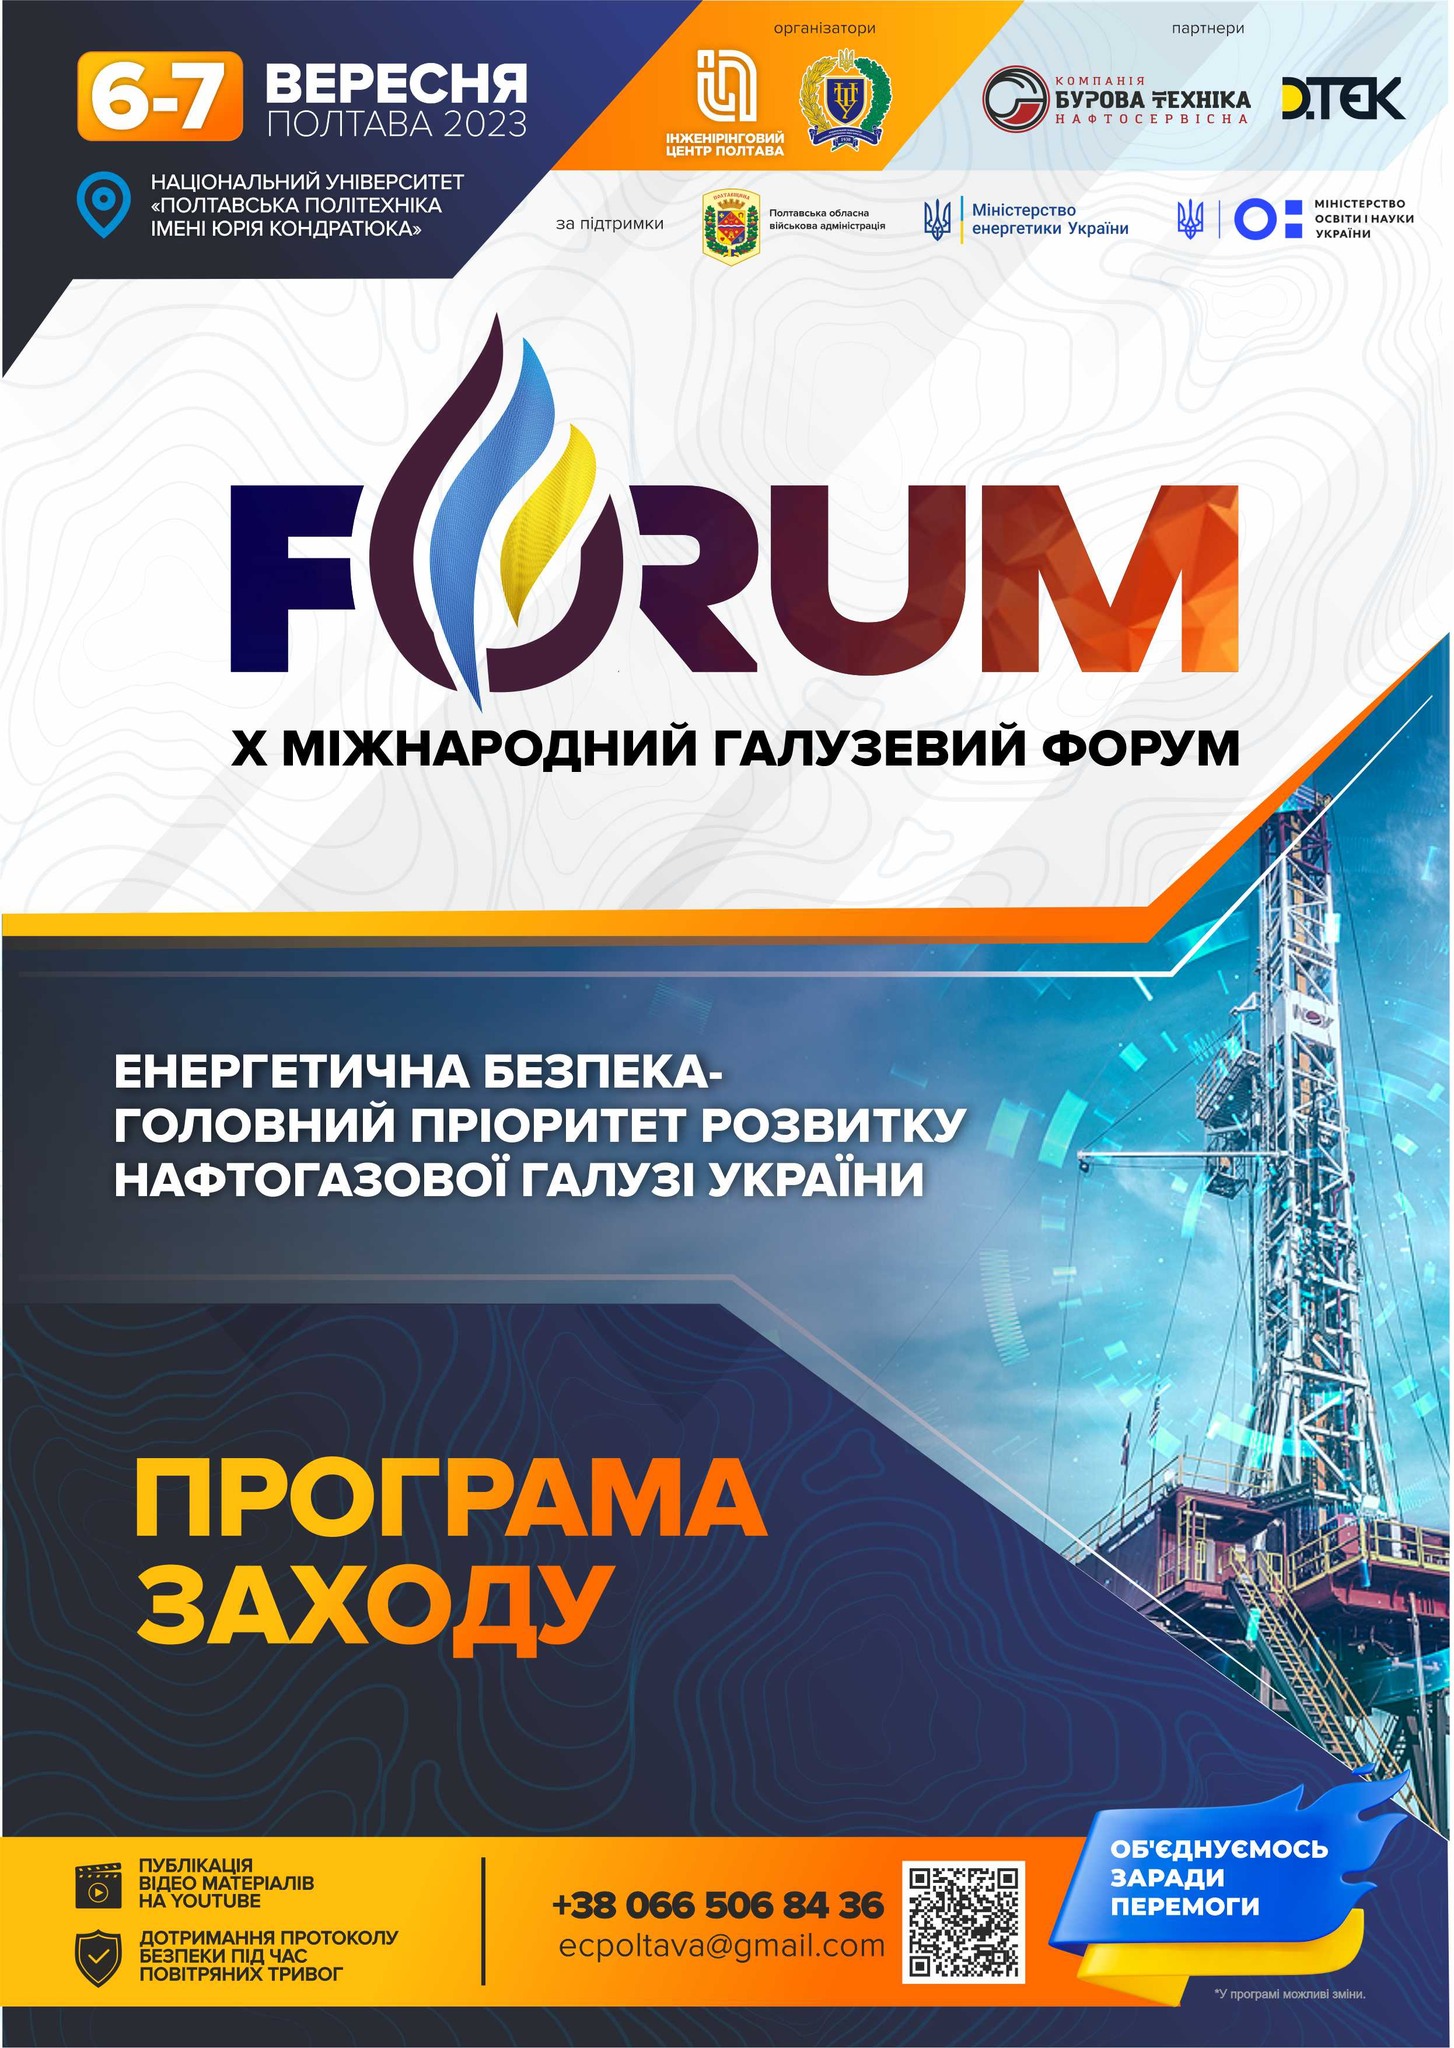 Полтавська політехніка запрошує взяти участь у X Міжнародному галузевому форумі